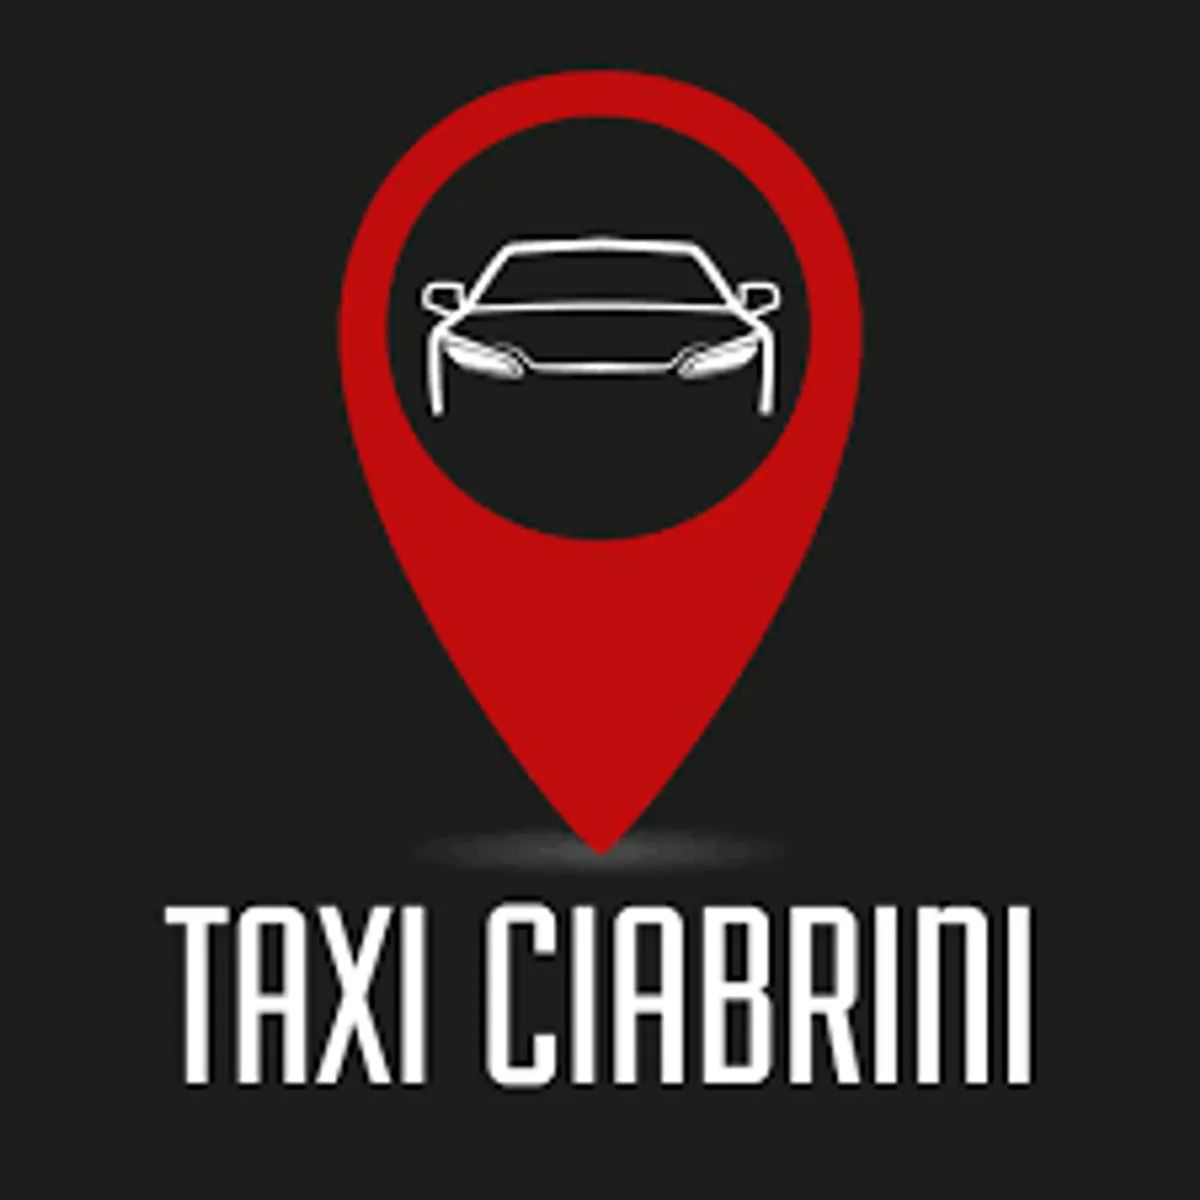 Taxi Ciabrini